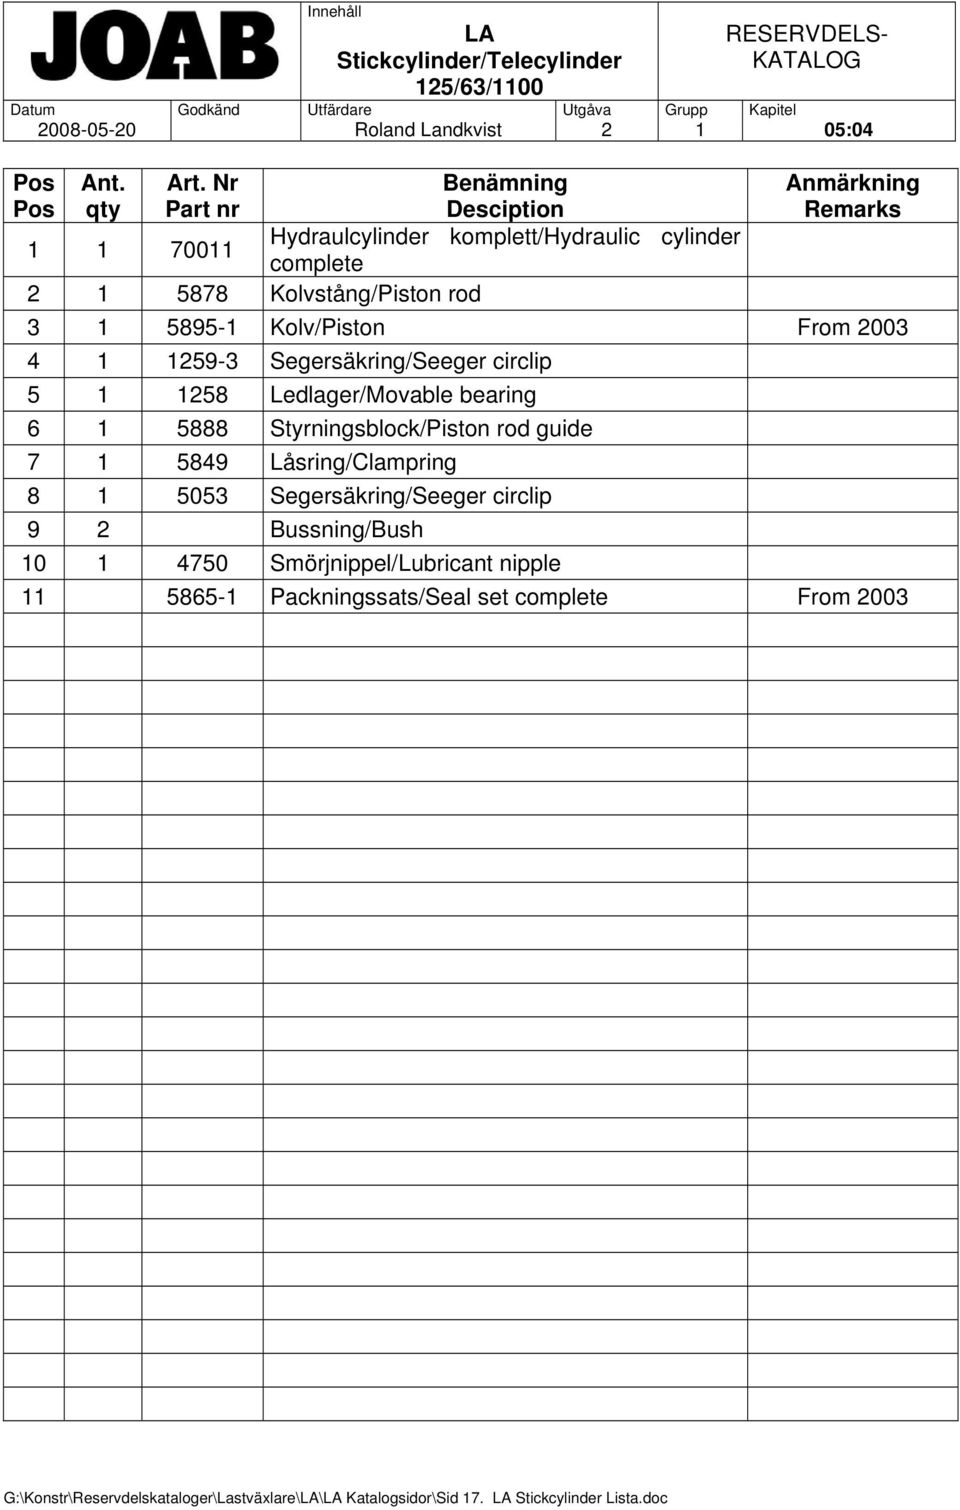 Kolv/Piston From 2003 4 1 1259-3 Segersäkring/Seeger circlip 5 1 1258 Ledlager/Movable bearing 6 1 5888 Styrningsblock/Piston rod guide 7 1 5849